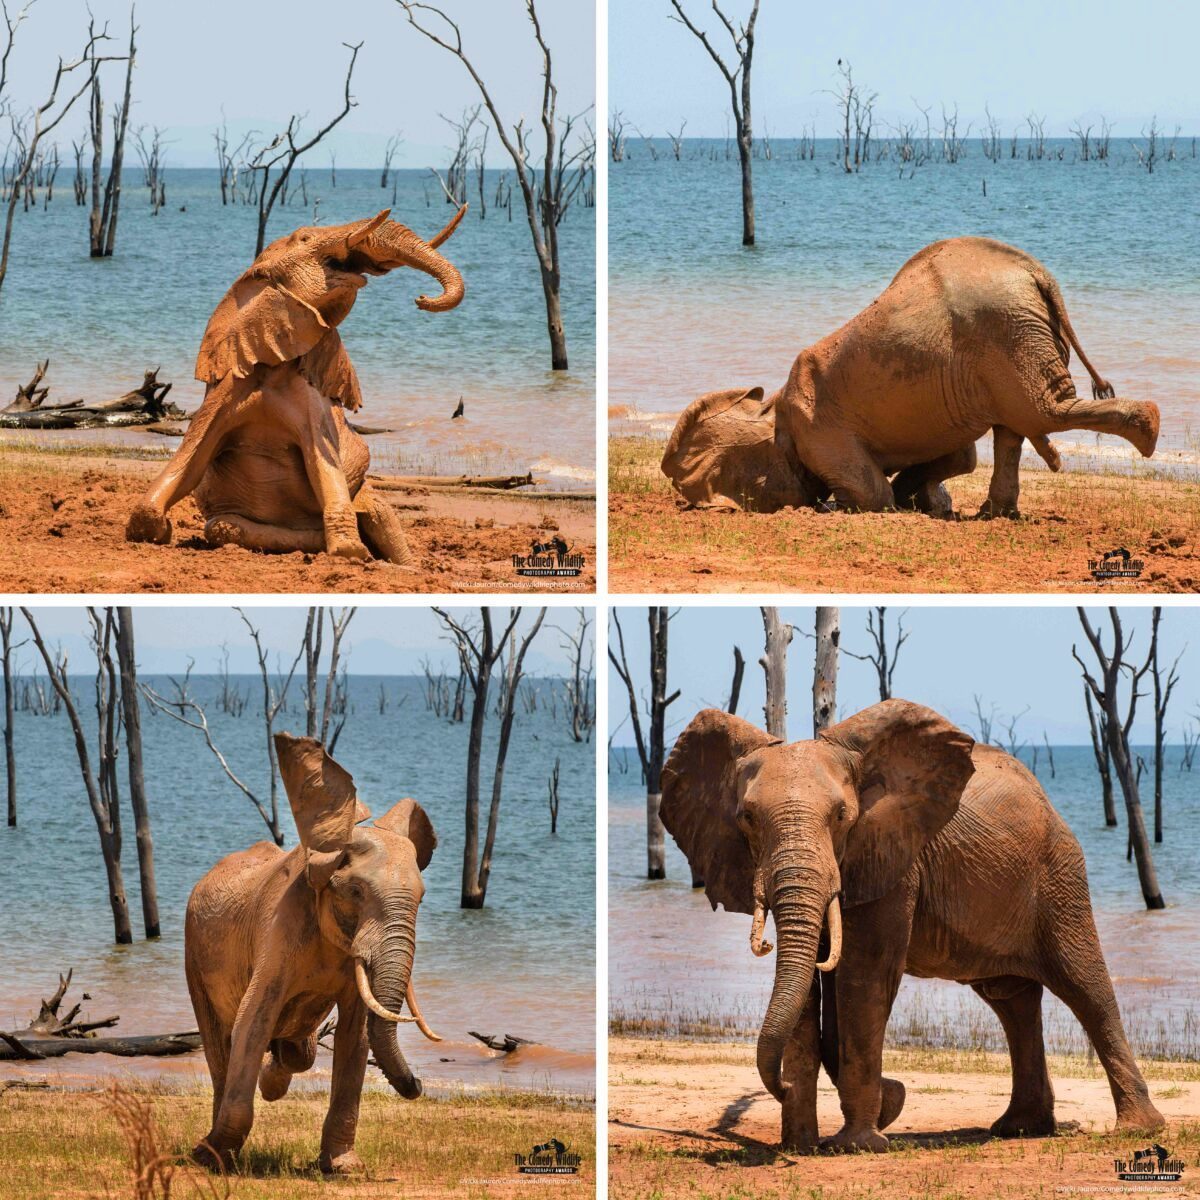 作品名稱為「泥浴的樂趣」，在一個炎熱的下午，一頭大象在津巴布韋卡里巴湖岸邊的枯樹旁洗泥浴。（Vicki Jauron/Comedy Wildlife PhotographyAwards 2021 提供